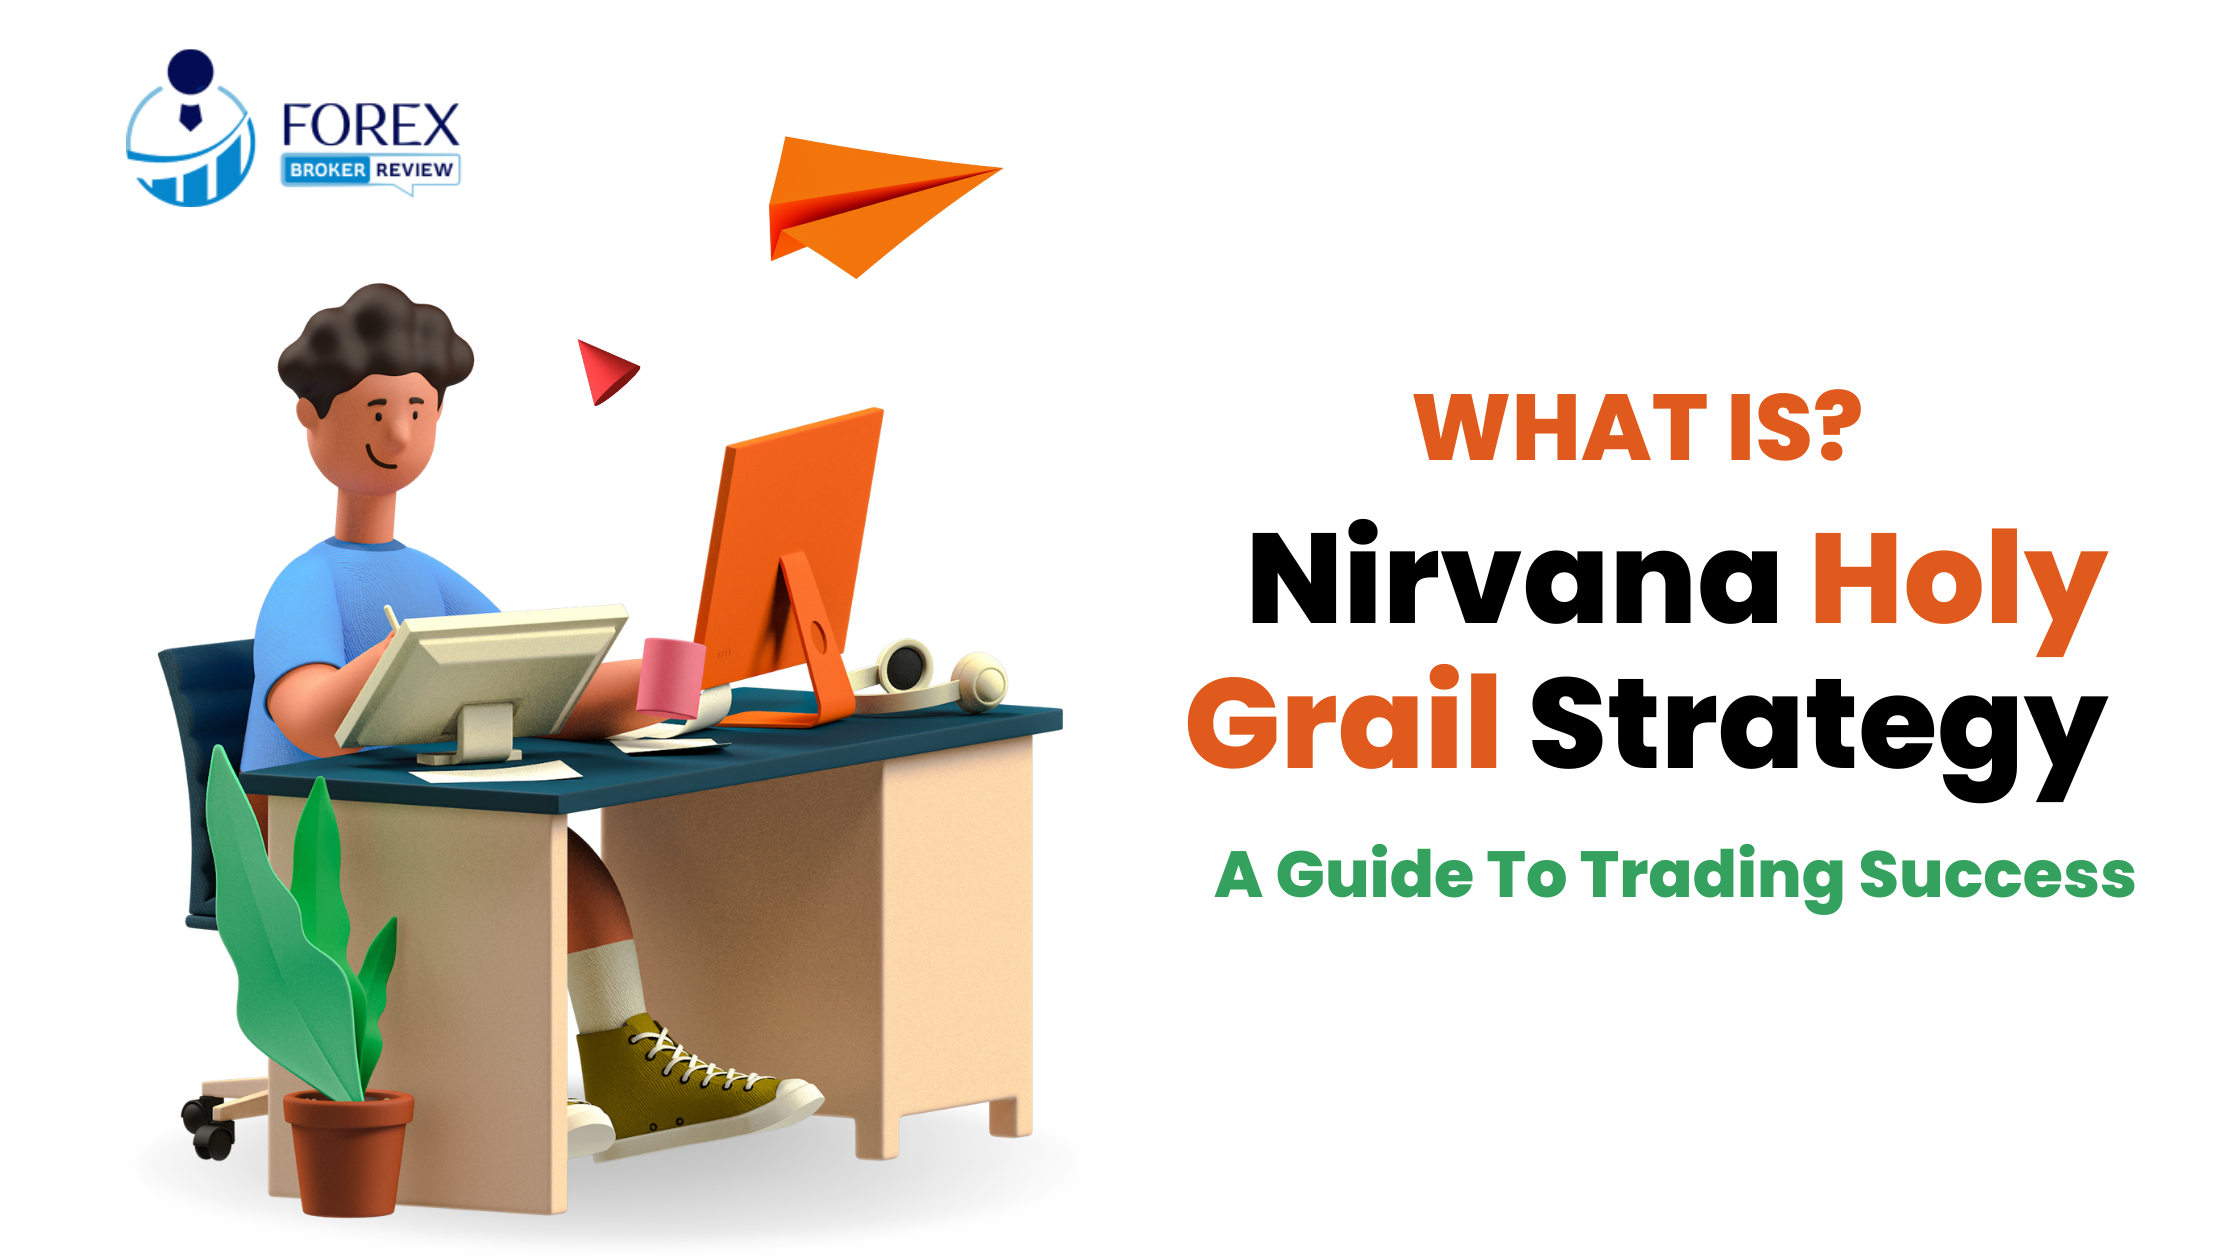 Nirvana Holy Grail Strategy